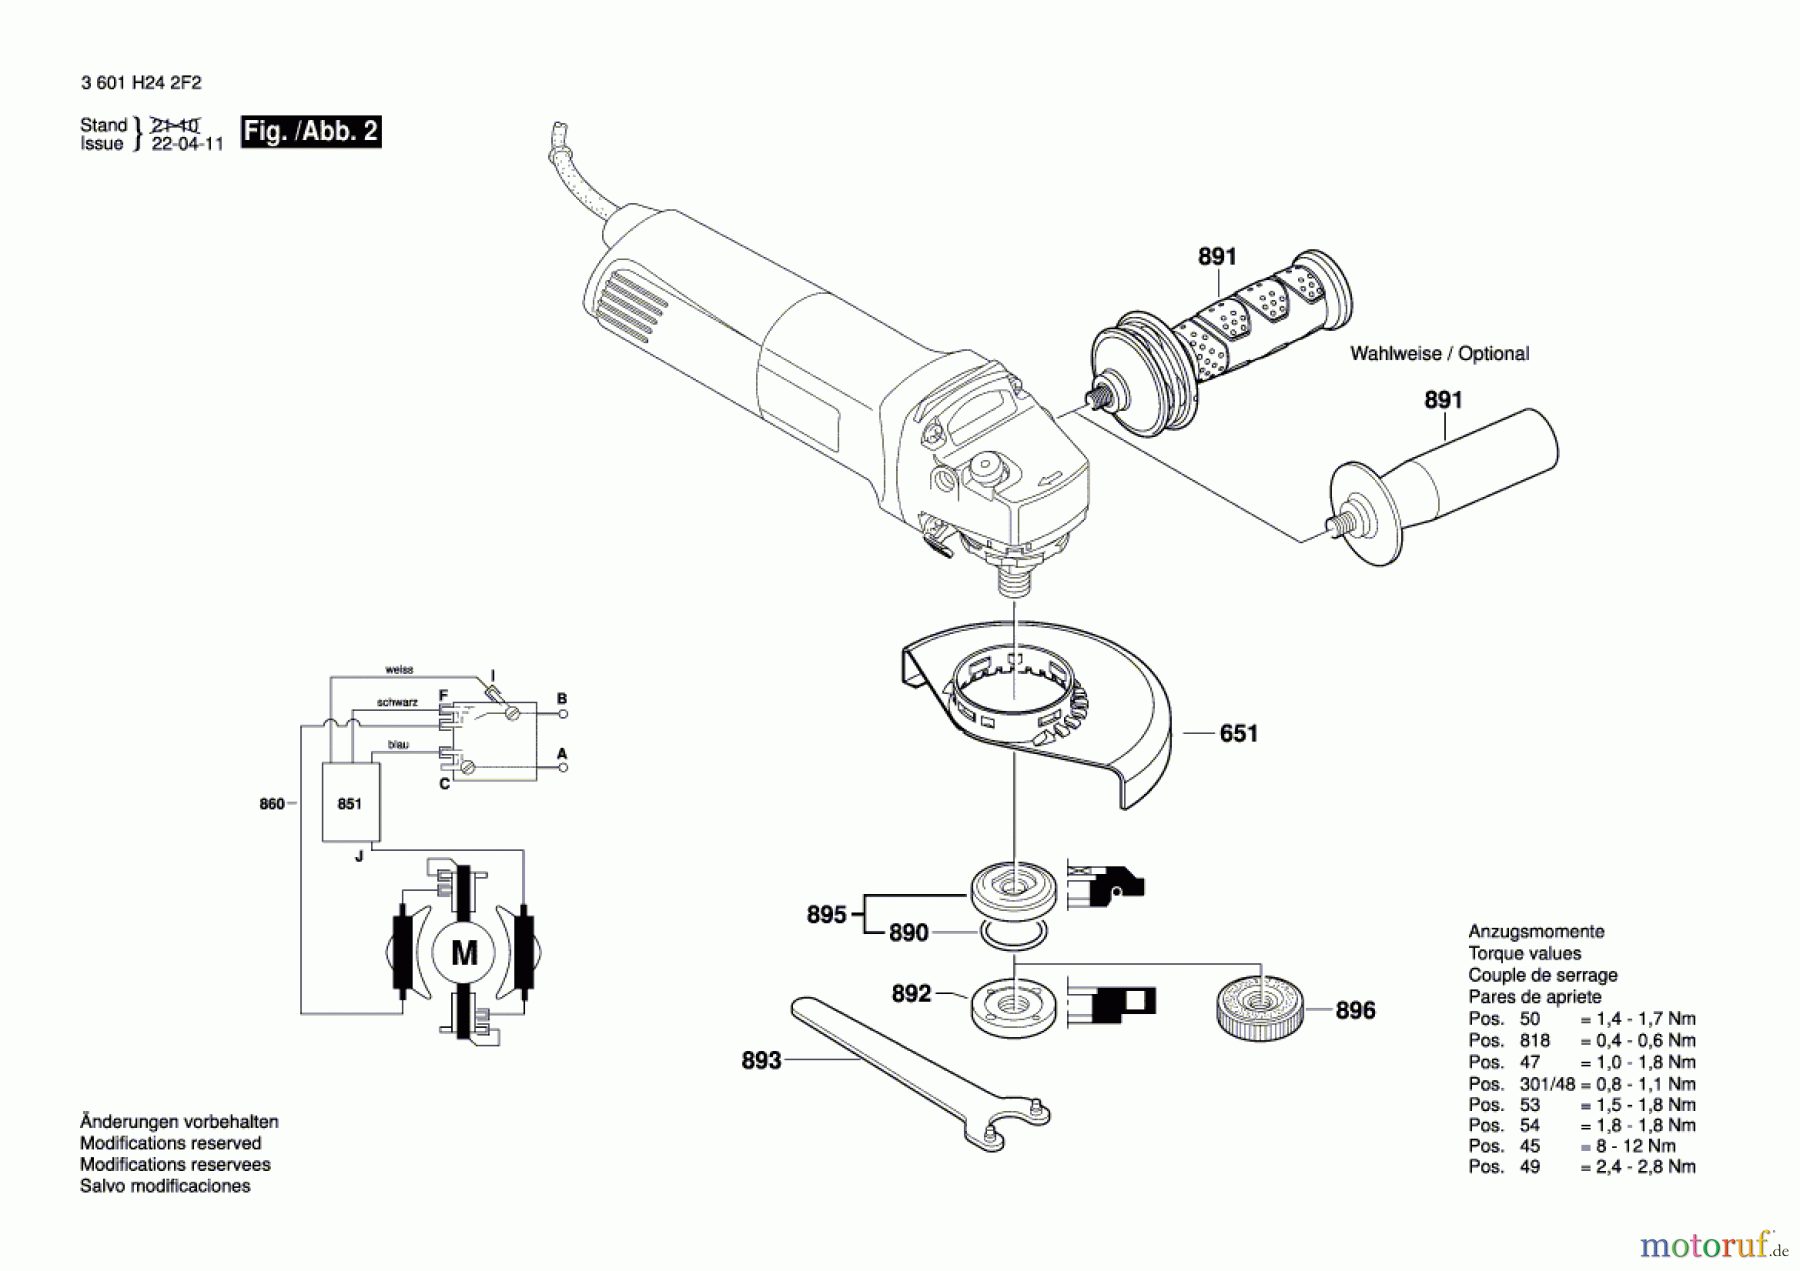  Bosch Werkzeug Winkelschleifer GWS 14-125 Seite 2